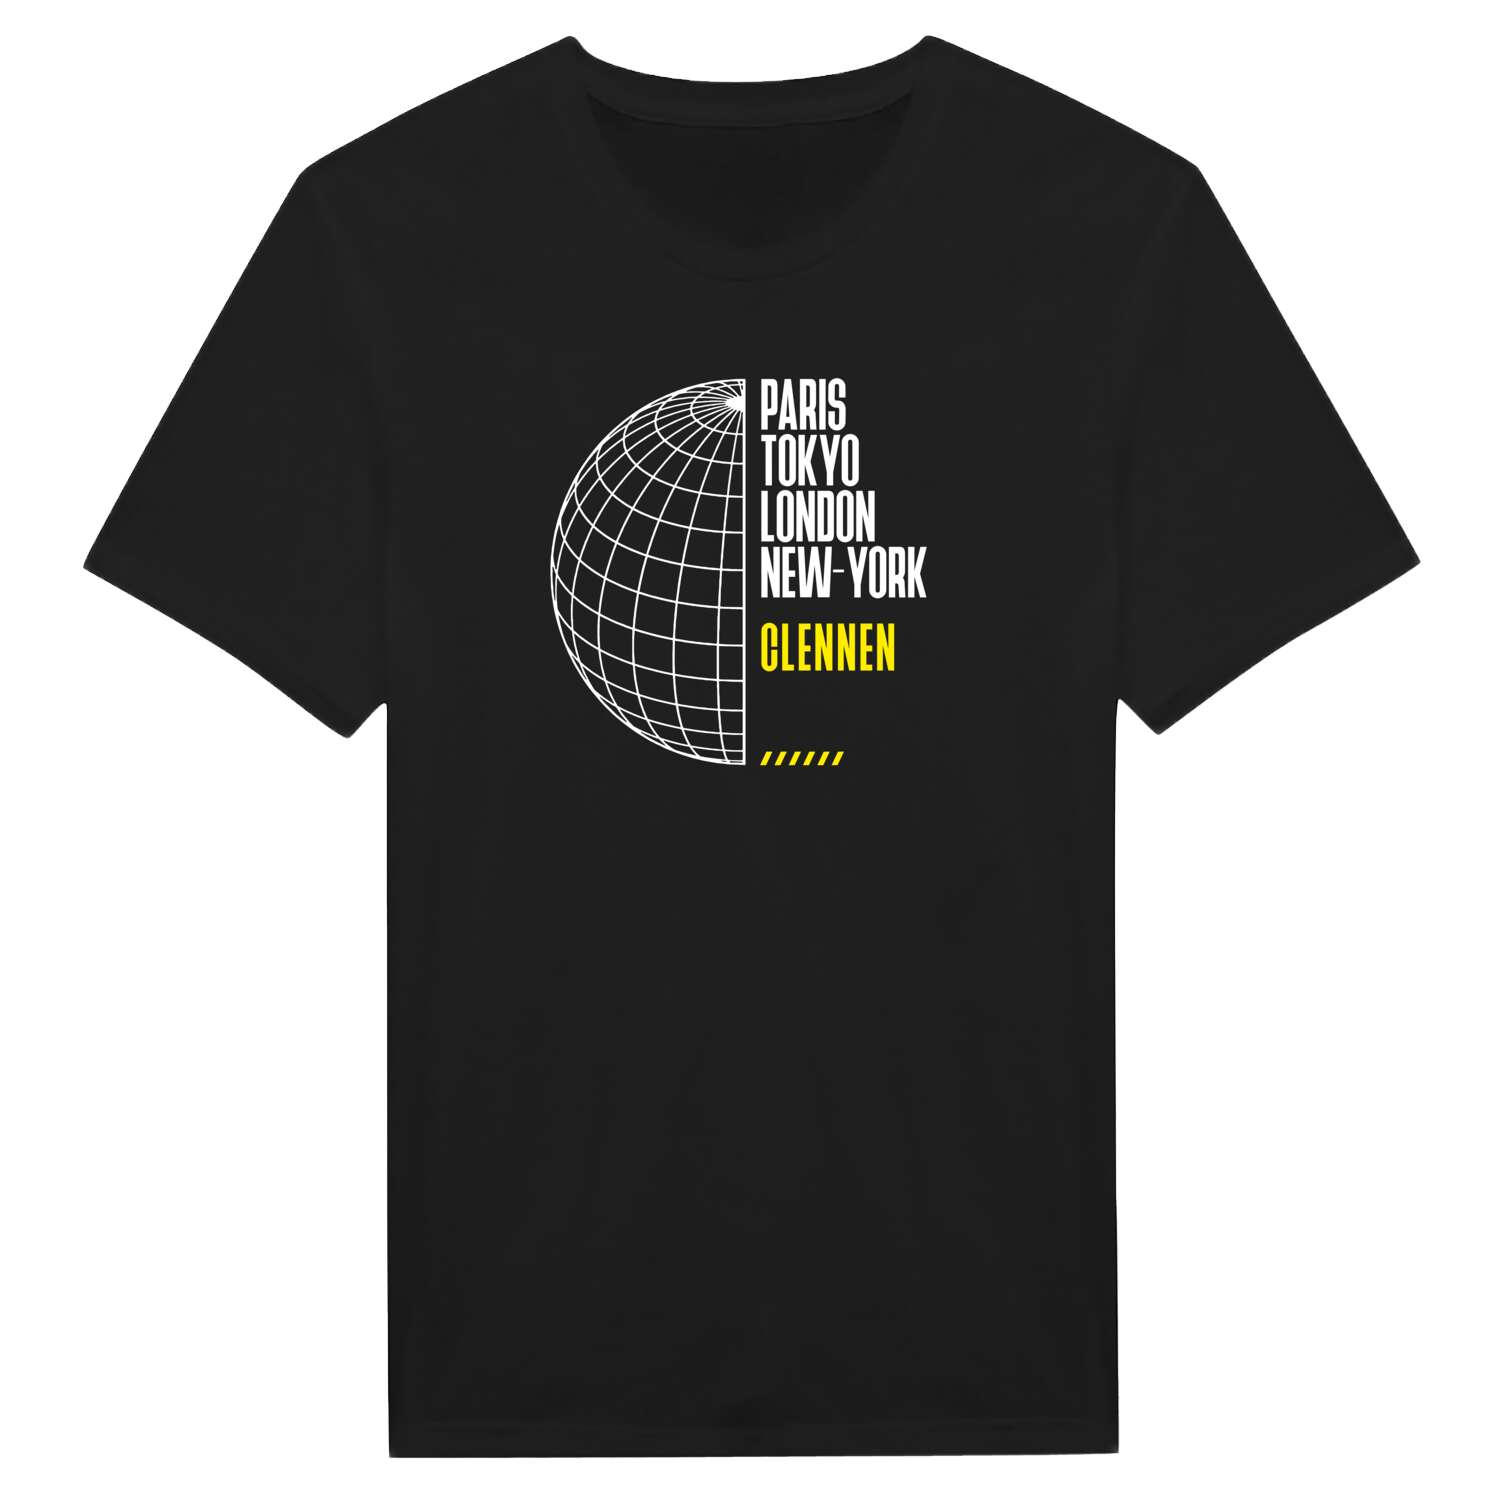 Clennen T-Shirt »Paris Tokyo London«